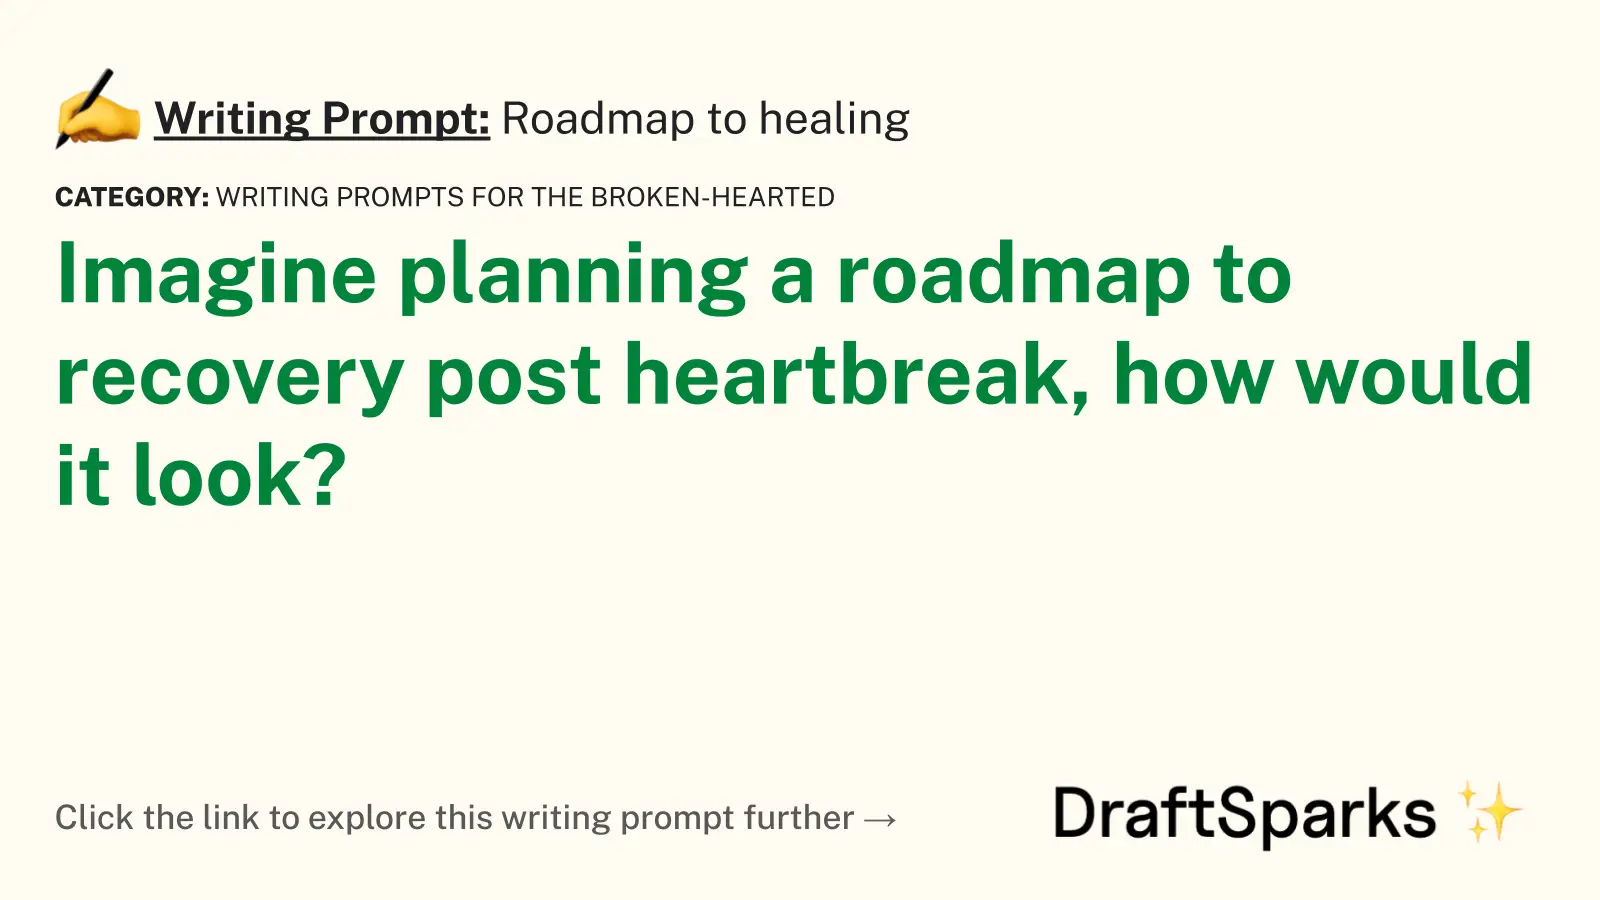 Roadmap to healing